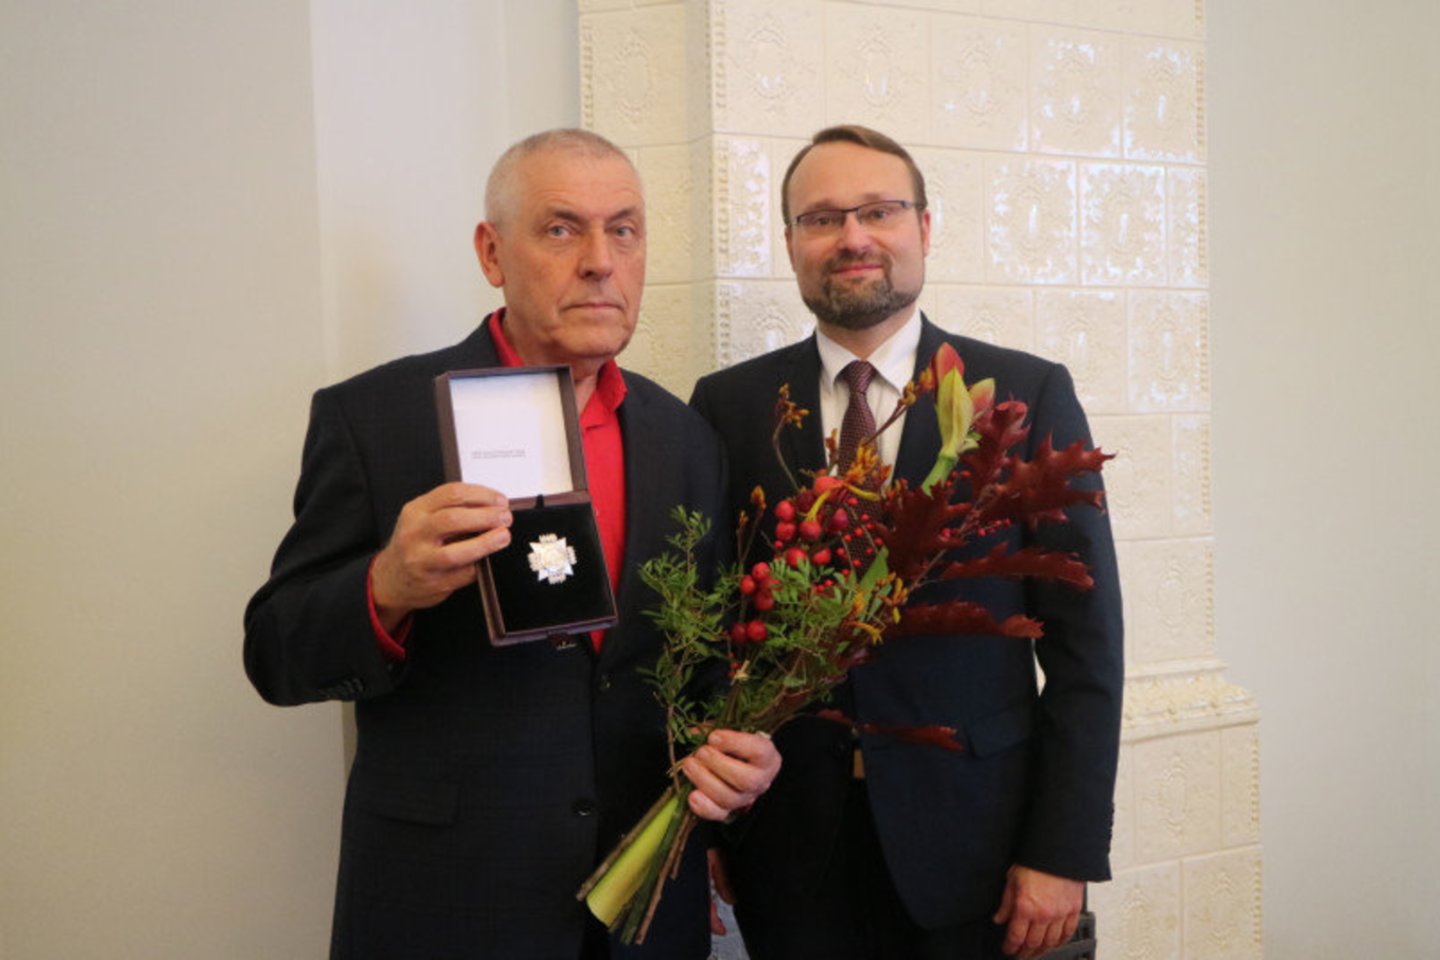  Kultūros ministras Mindaugas Kvietkauskas tapytojui, grafikui, iliustratoriui Stasiui Eidrigevičiui įteikė garbės ženklą „Nešk savo šviesą ir tikėk“.<br> LKM nuotr.